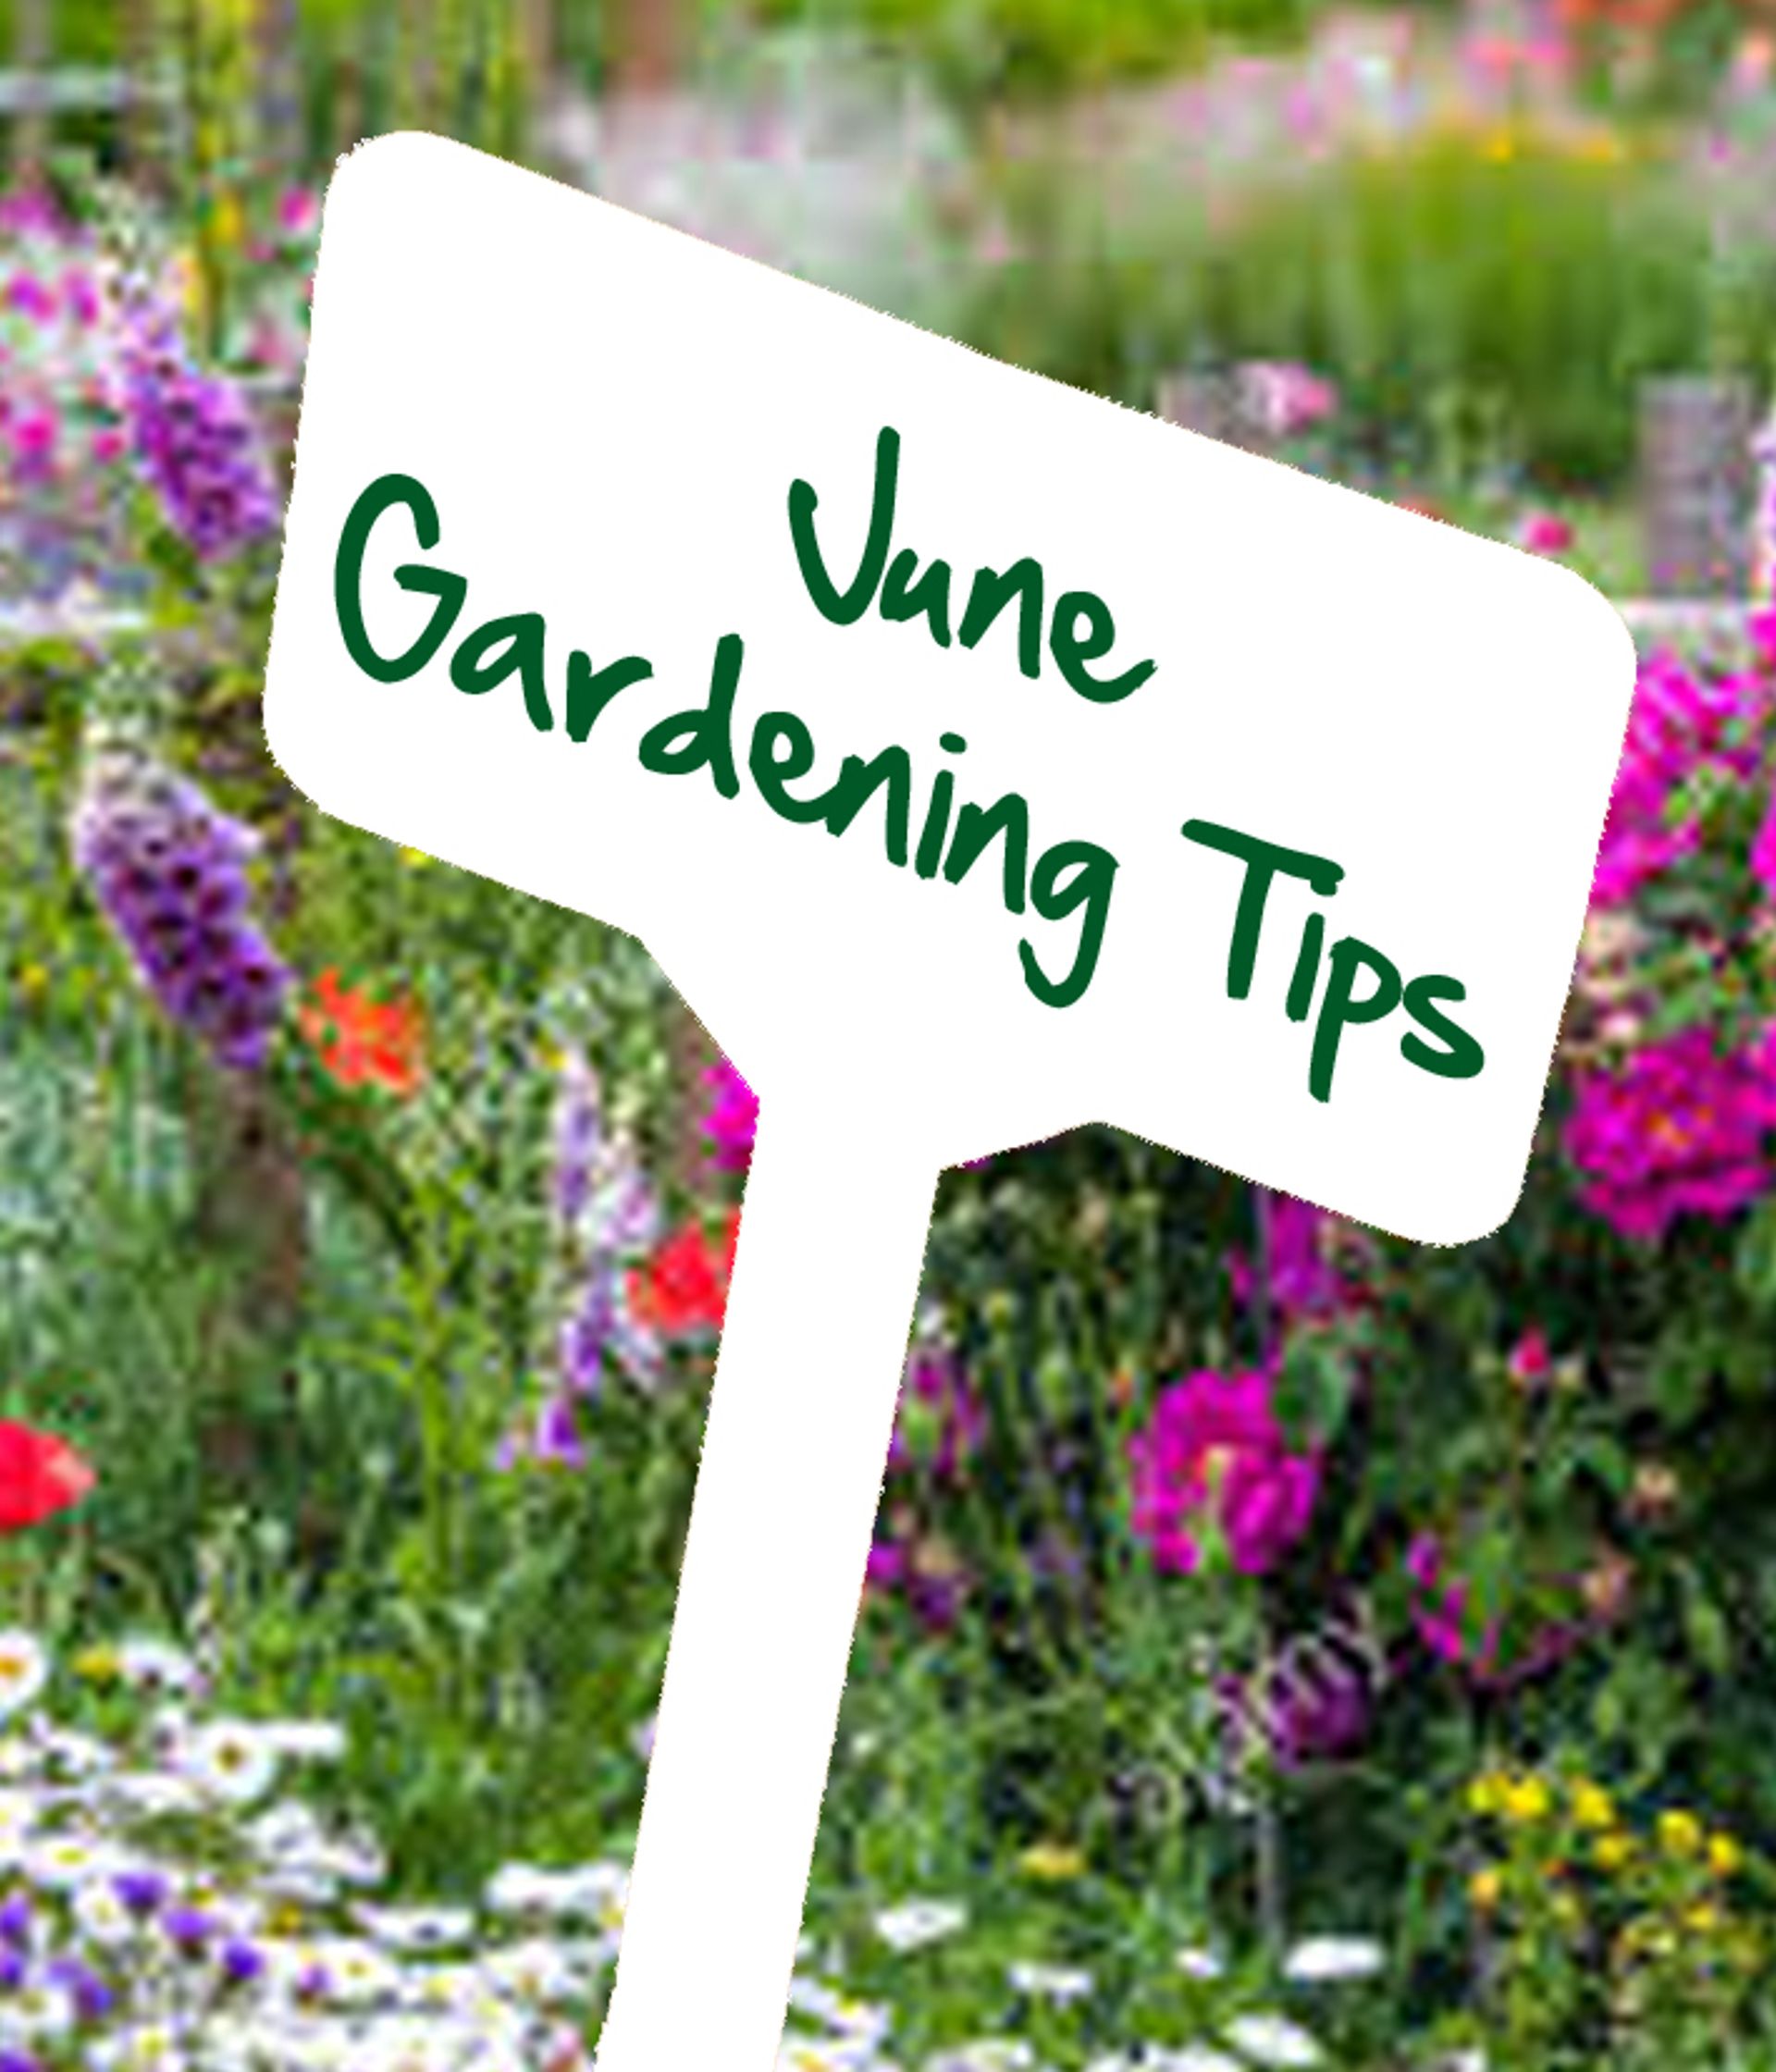 June gardening tips by Reg Moule